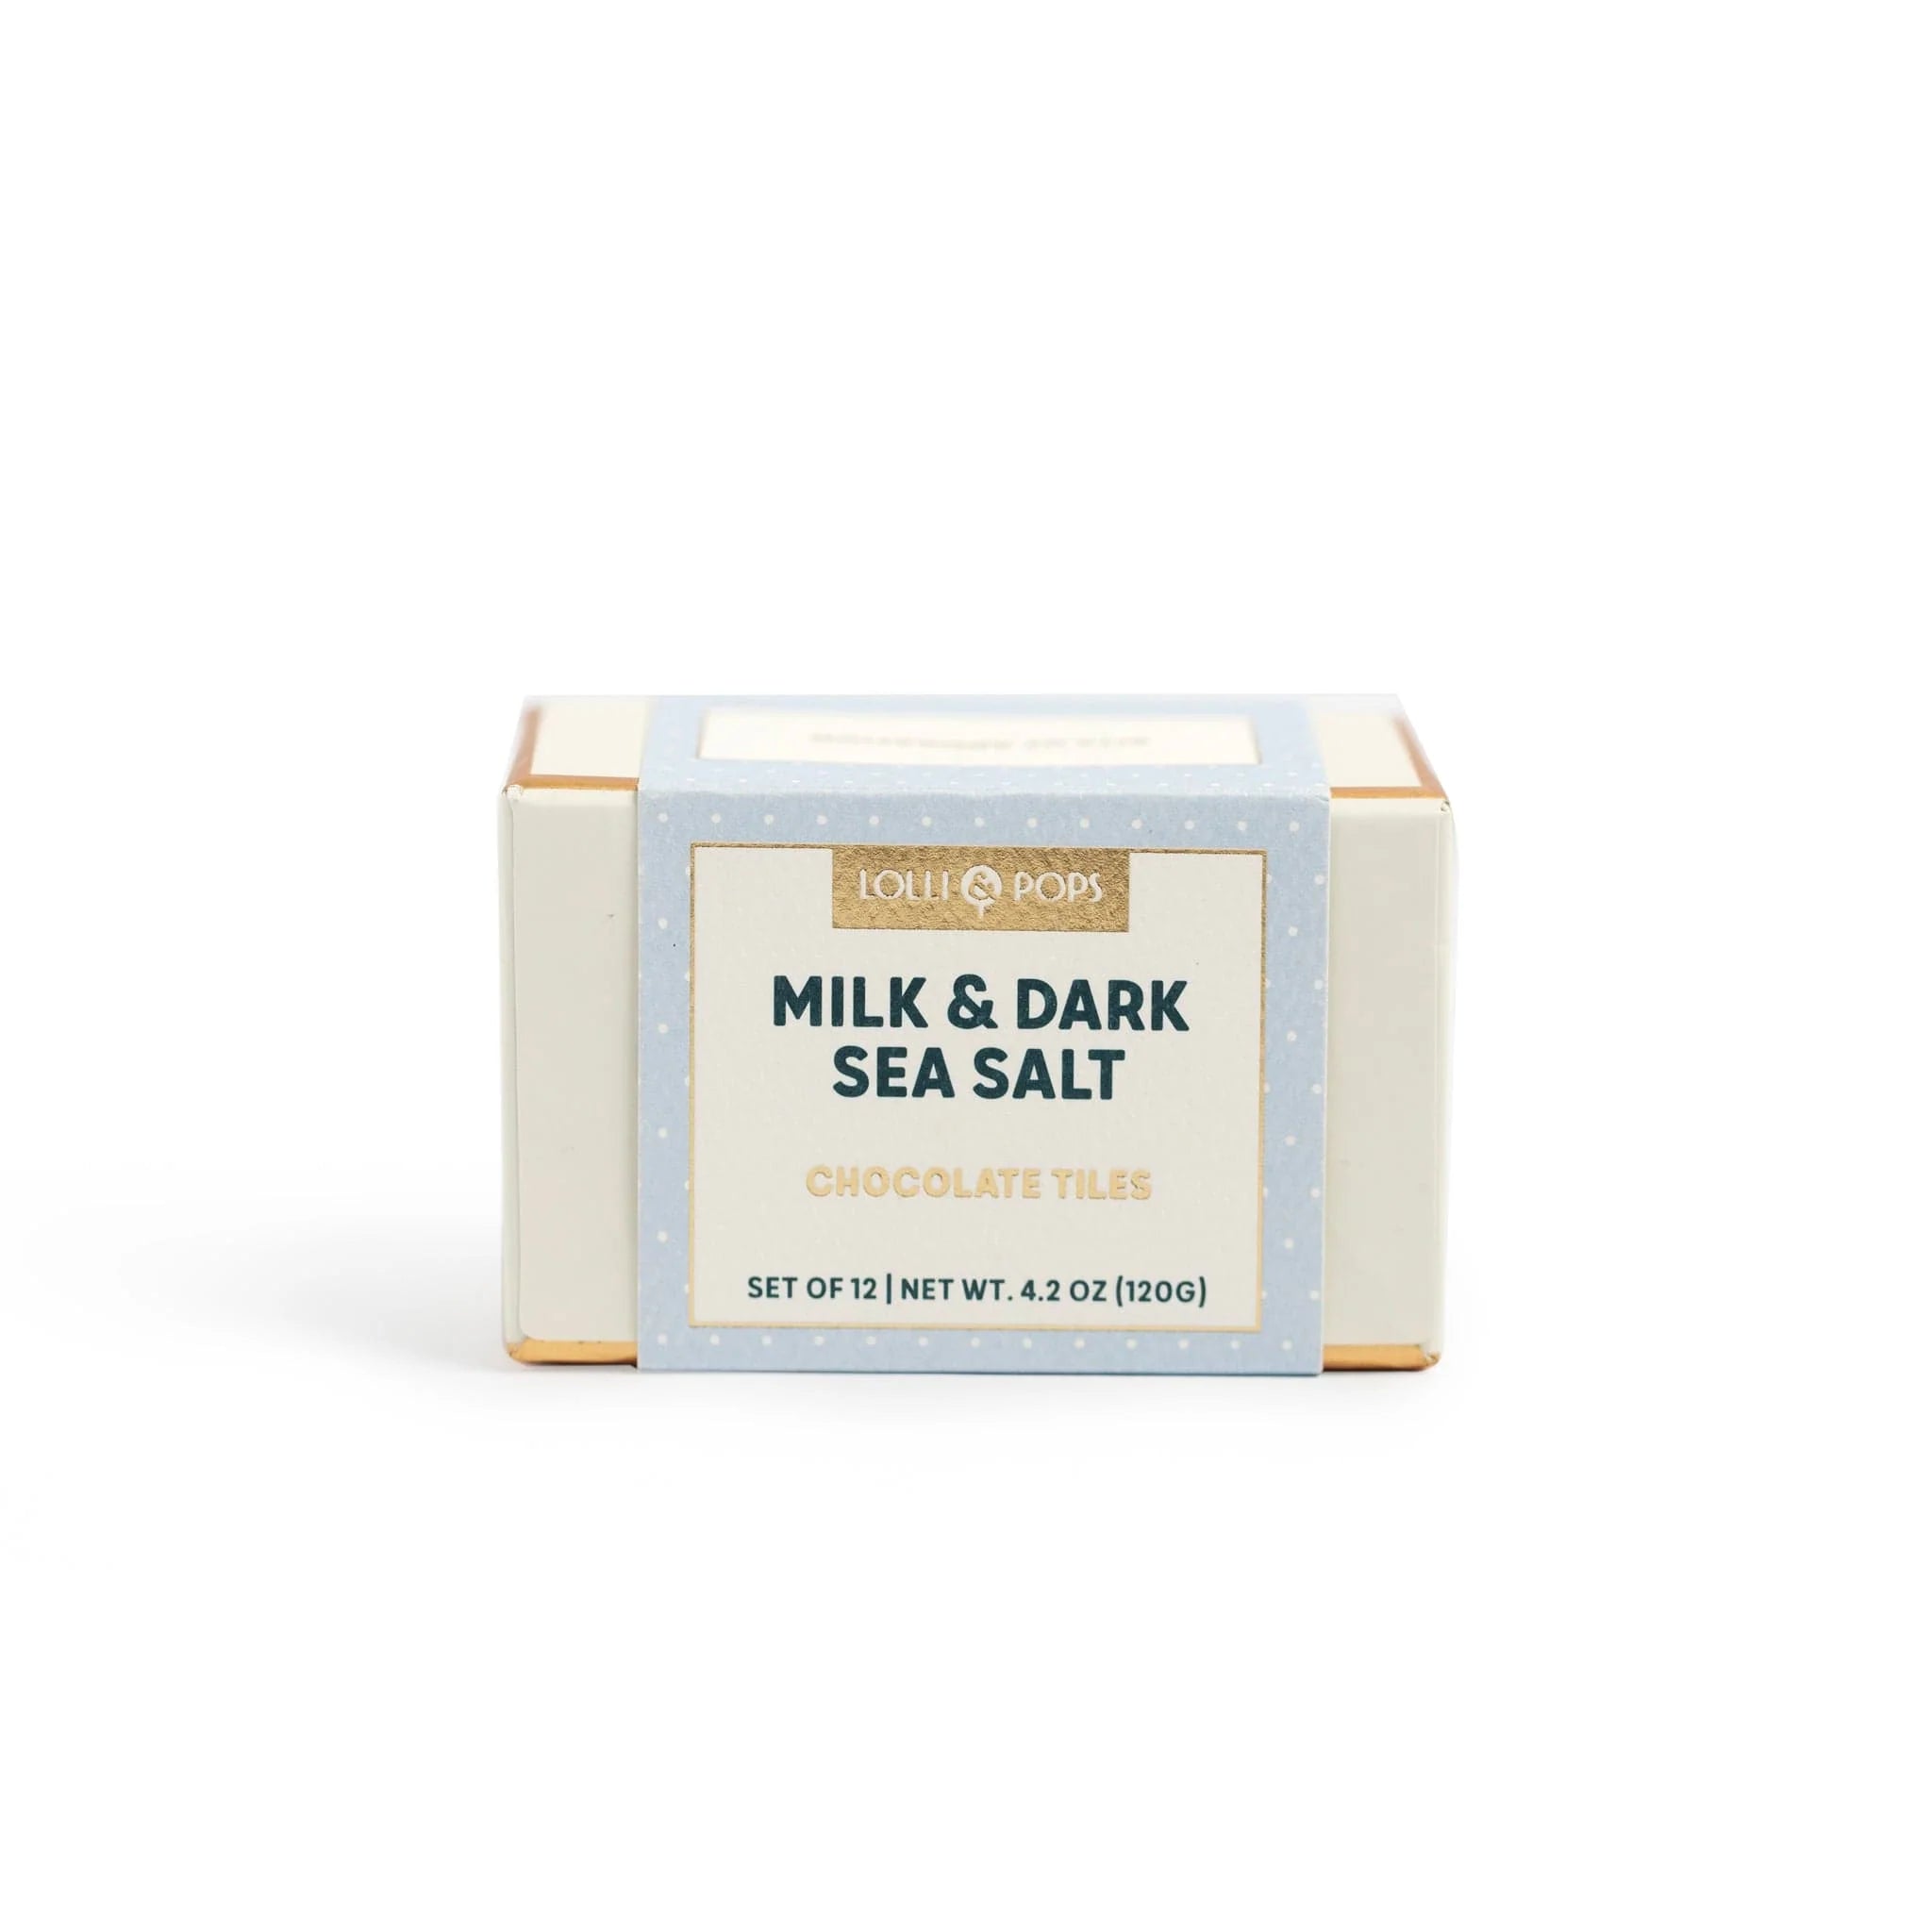 Milk & Dark Sea Salt Chocolate Tiles